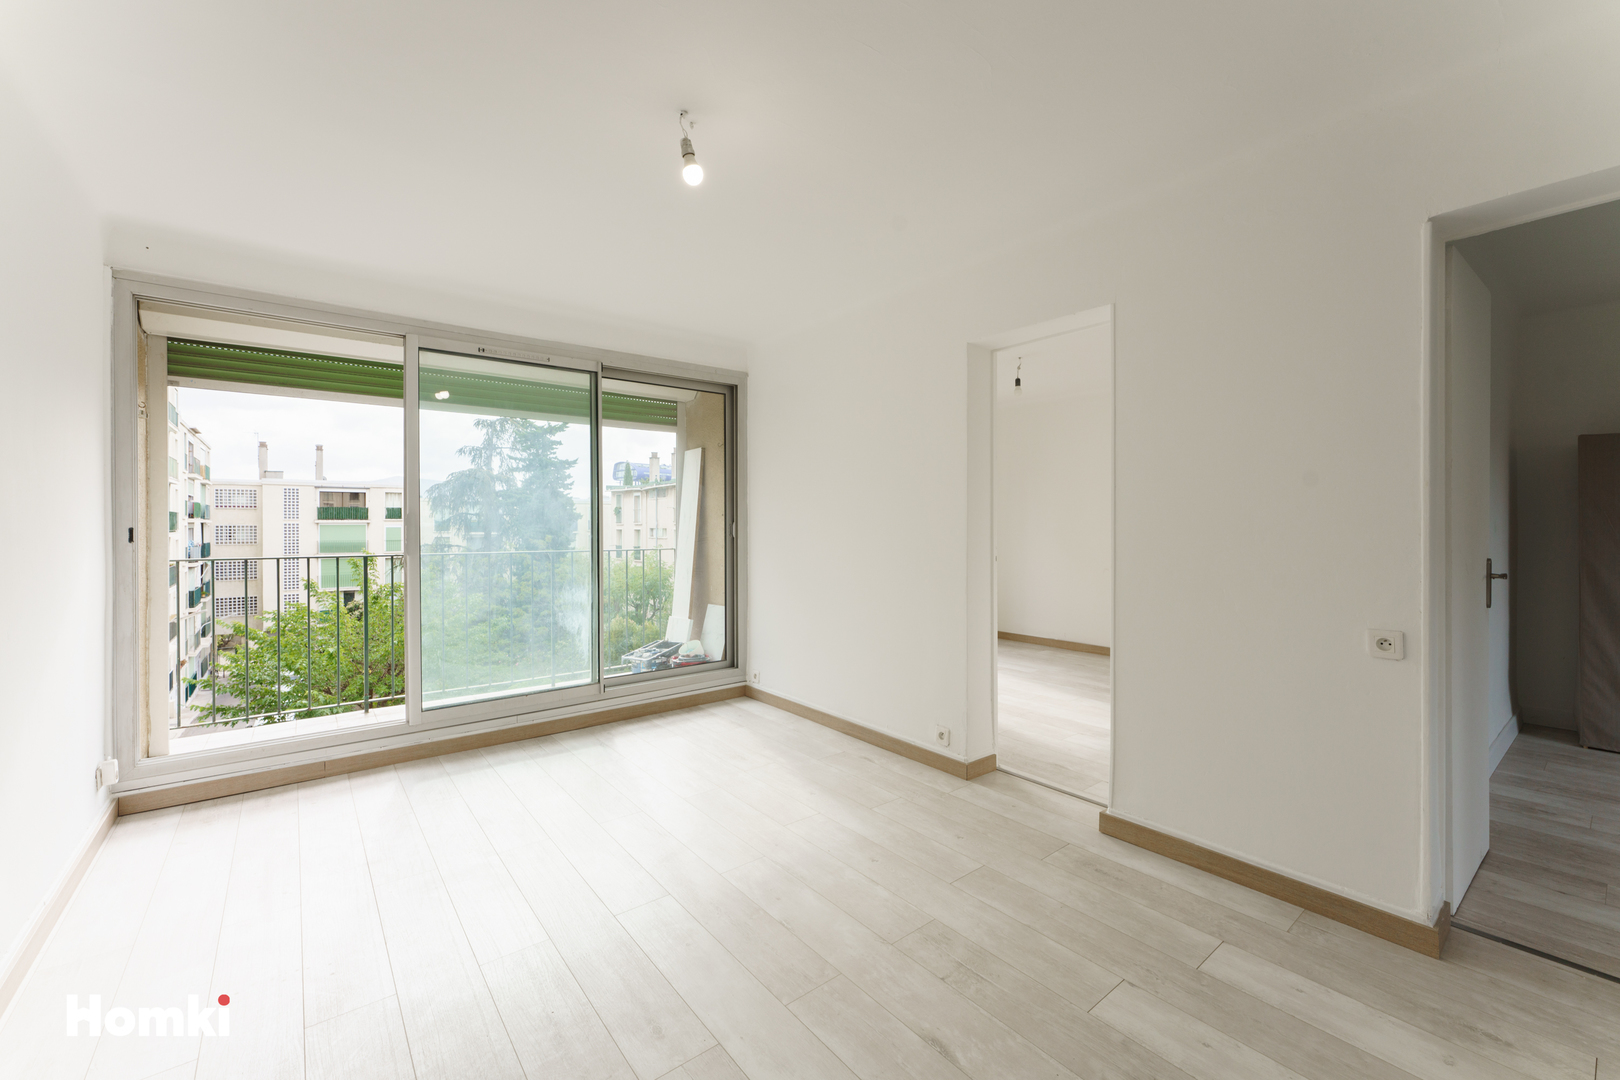 Homki - Vente Appartement  de 47.0 m² à Marseille 13013